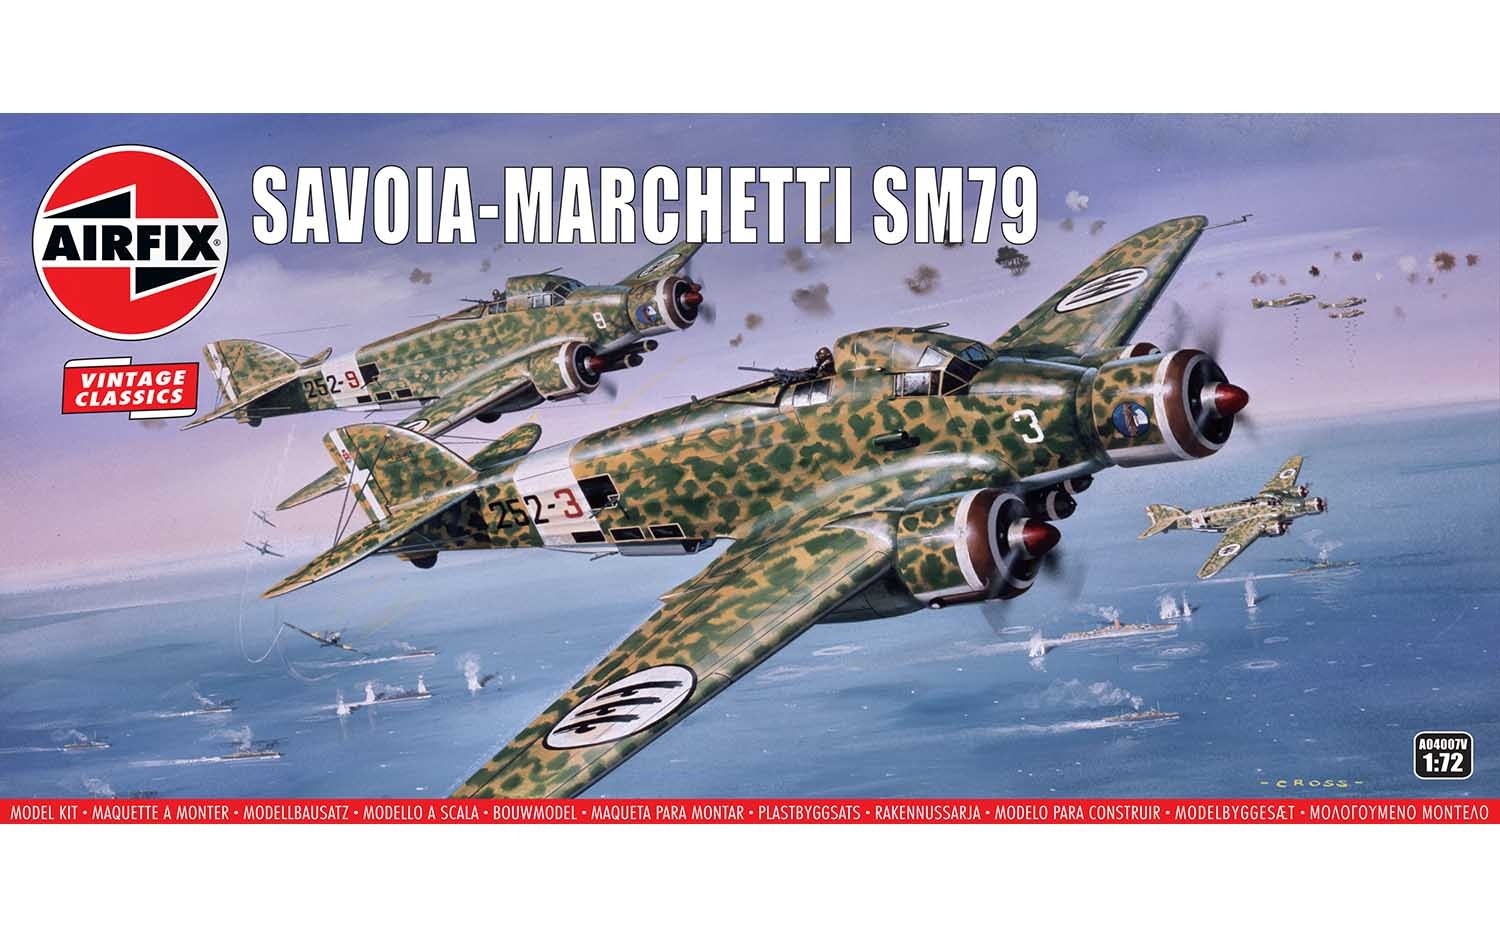 Savoia-Marchetti SM79